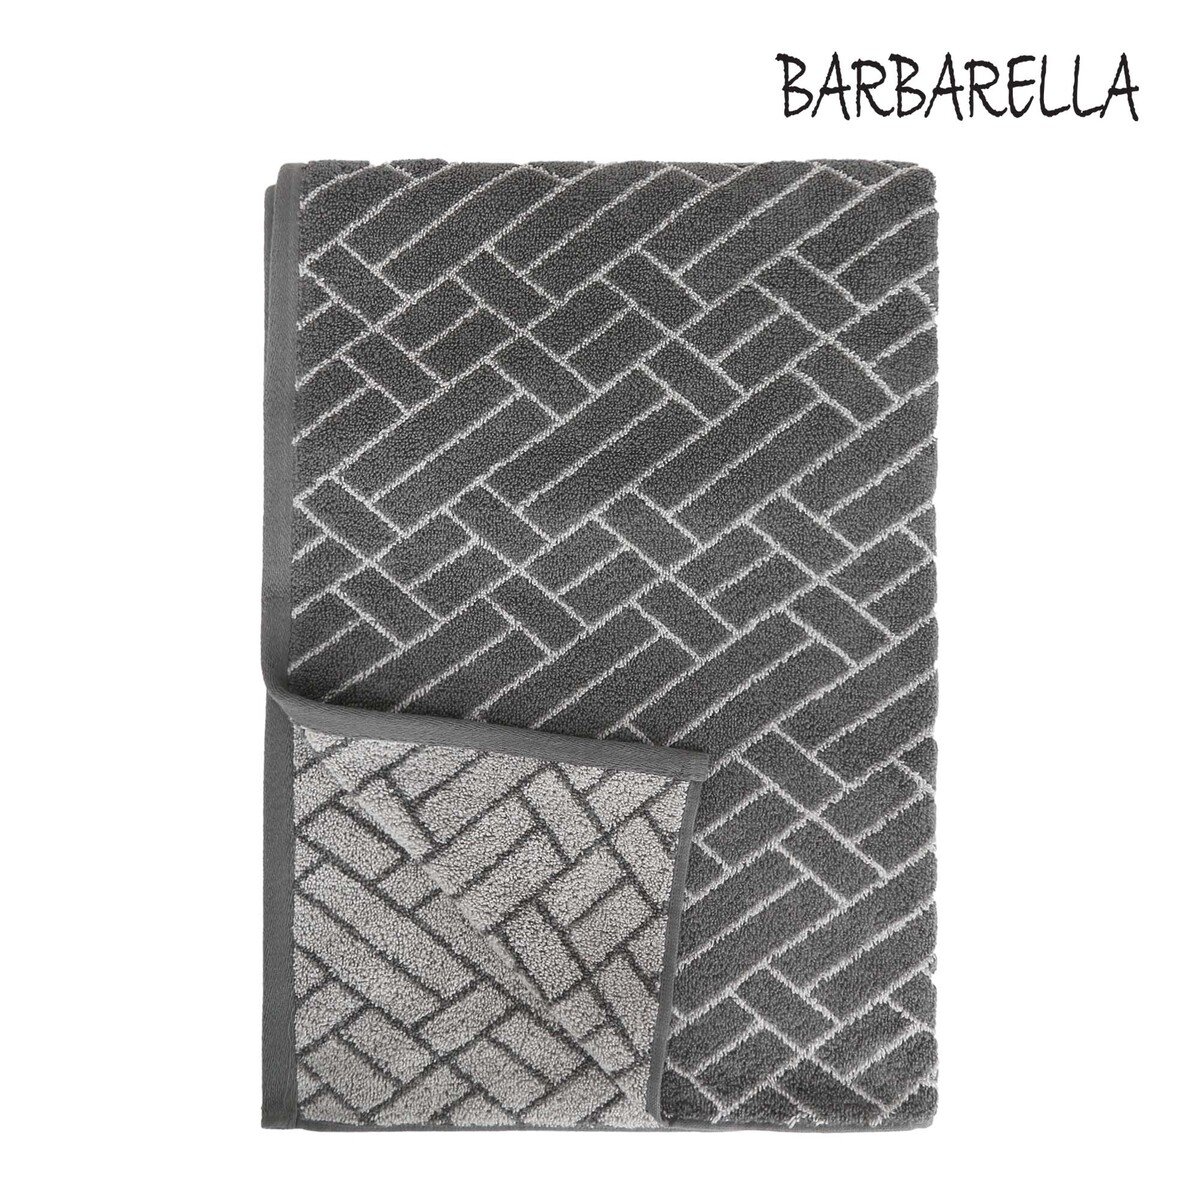 Barbarella Bath Towel Tile Jacquard VAPOR  Size: W76 x L142cm